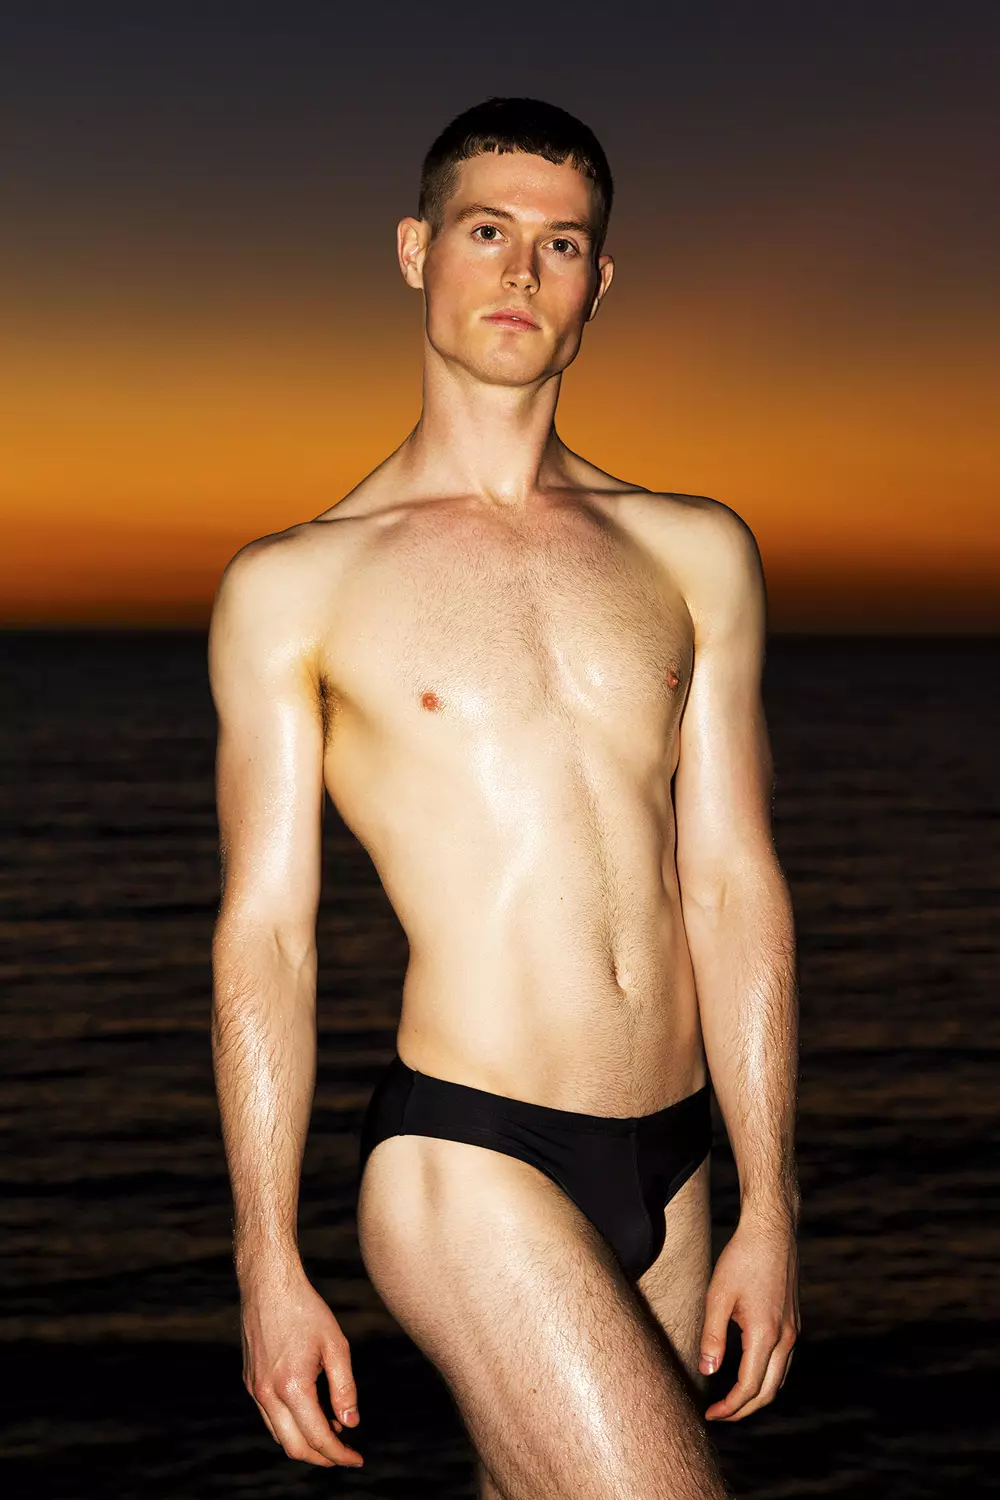 Upoznajmo ovaj rad talentiranog fotografa Trenta Pacea koji predstavlja ekskluzivni model za Fashionably Male Matthewa Hardena u pozadini s temom raja na plaži gdje možemo cijeniti pravi talenat Trenta i Matthewa. koji nosi crne kupaće gaćice od Cocksoxa i bijele gaćice Teamm8.